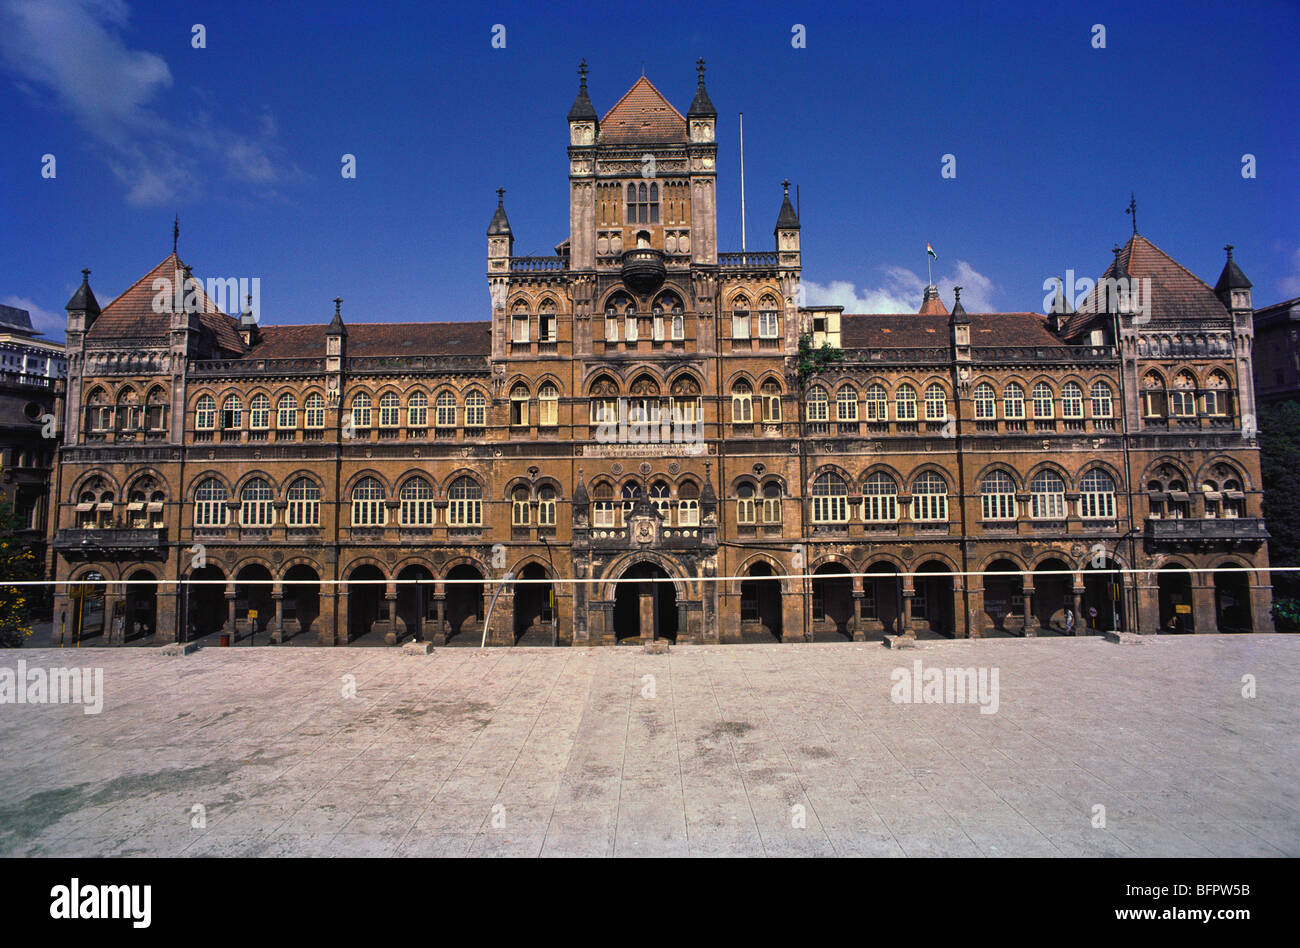 elphinstone-college-bombay-mumbai-maharashtra-india-asia-stock-photo-alamy